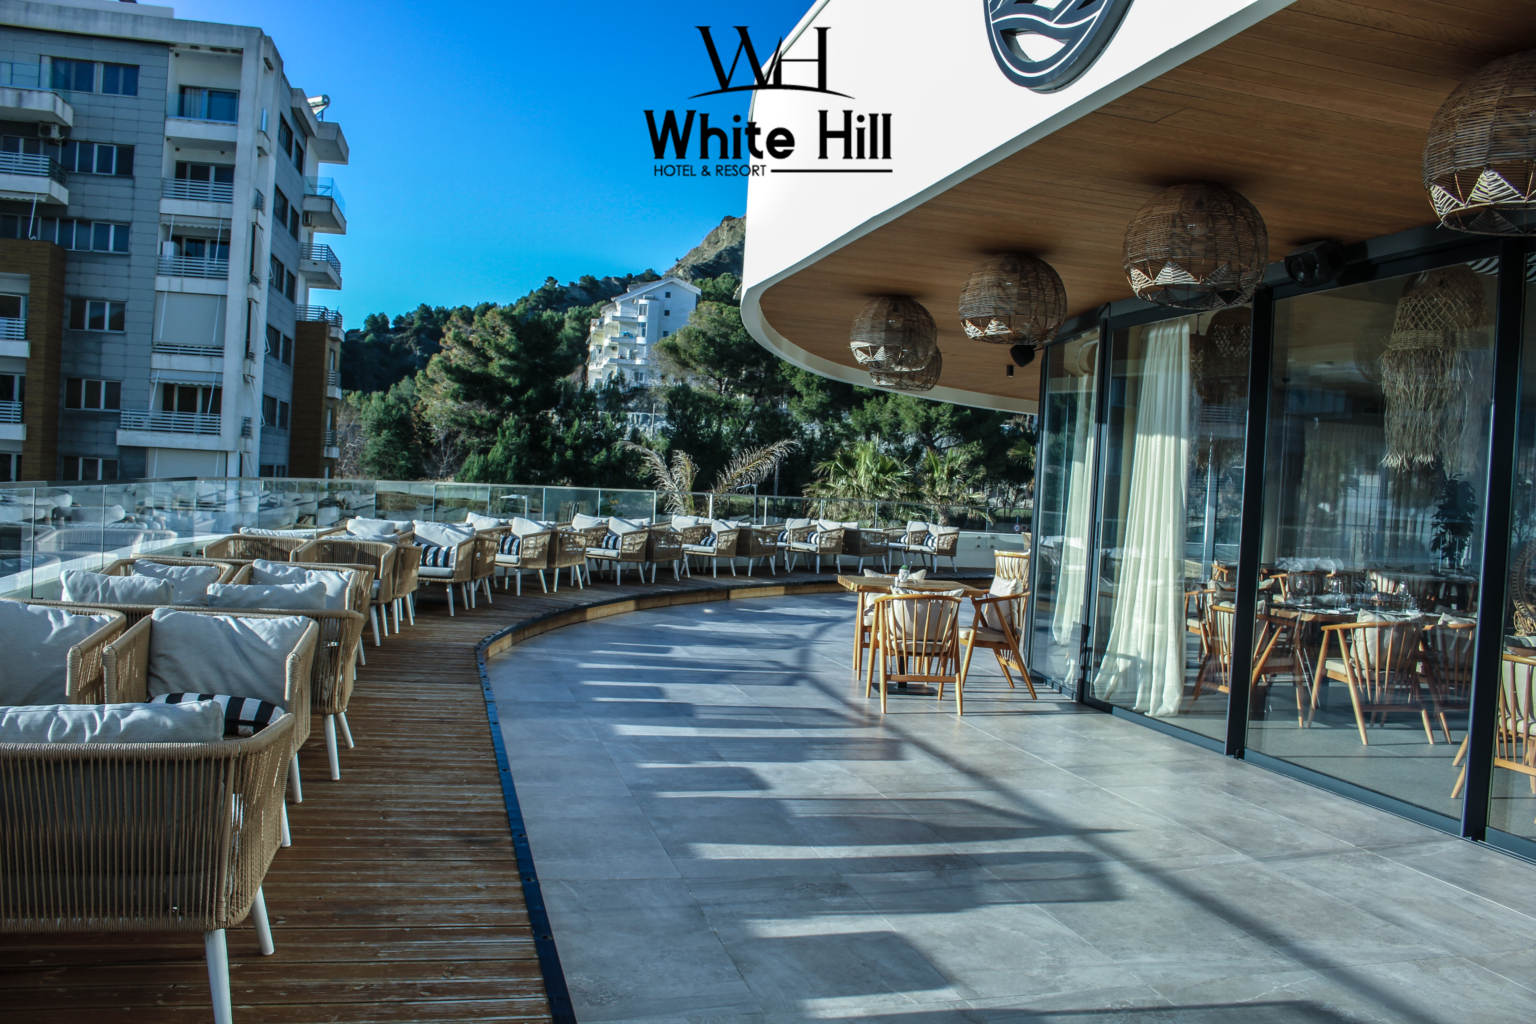 White Hill Resort është një prej hoteleve më luksoze dhe të mahnitshme në bregdetin e Durresit. Ky resort i veçantë ndodhet në një ambient të pazakontë, ku bukuria e natyrës dhe komoditeti takohen në një harmoni tërheqëse për të gjithë vizitorët. Dhomat e hotelit në White Hill Resort janë të dizajnuara me kujdes për të siguruar një përvojë të jashtëzakonshme për udhëtarët. Secila dhomë është e përshtatur me elemente moderne, ndriçim të natyrshëm dhe pamje të mrekullueshme drejt detit ose gjelbërimin e mrekullueshëm të natyrës. Dhomat e hotelit ofrojnë një gamë të gjerë të shërbimeve të larta, duke përfshirë krevate të rehatshme, banjot private të mëdha, ajër të kondicionuar, mini-bar, televizorë të shkëlqyeshëm dhe akses në internet pa kufi. Për më tepër, vizitorët kanë mundësi të zgjedhin mes dhomave me pamje drejt detit ose atyre me pamje të bukur nga pyjet dhe kopshtet e rrethit. Në shtëpinë e restorantit, të cilën e shpërndanë disa restorante, që nga ato me pamje të mrekullueshme të detit deri te ato të specializuara në kuzhinën lokale dhe ndërkombëtare, vizitorët mund të shijojnë kuzhinën e shkëlqyer dhe shërbimin e shkëlqyer. Përveç kësaj, White Hill Resort ofron edhe shërbime shtesë si pishina e jashtme, qendra fitnesi, aktivitete sportive në plazh, si dhe spa dhe qendra relaksimi për të ofruar një përvojë të plotë të stresit dhe relaksimit. Me një ambient të mrekullueshëm, shërbime të larta dhe pamje të mahnitshme, White Hill Resort në Durres është një destinacion i përjashtëm për udhëtimin tuaj në bregdetin e Adriatikut. Fix: +355 52 504 100 Cel: +355 69 313 66 66 Adresa: Rruga e Currilave, 2001, Durres, Albania Email: info@whitehillhotel.al Web: www.whitehillhotel.al Instagram: whitehill.hotel Facebook: White Hill Hotel